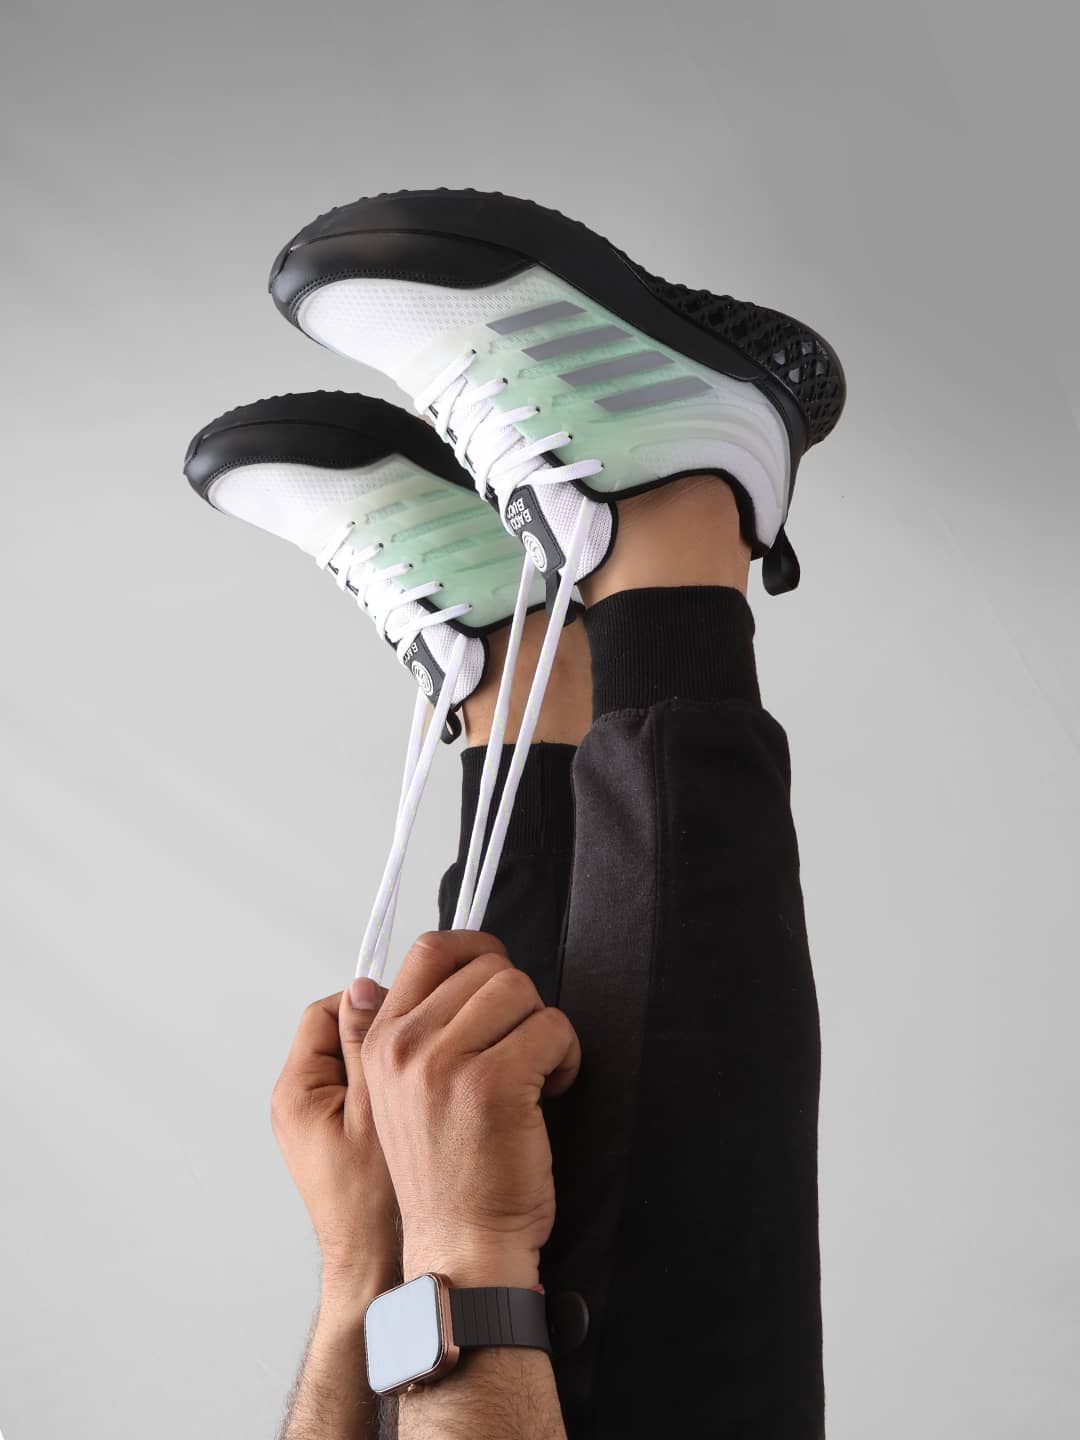 Bacca Bucci NIGHT GLIDER: The Elite Sportsperson's Versatile Footwear